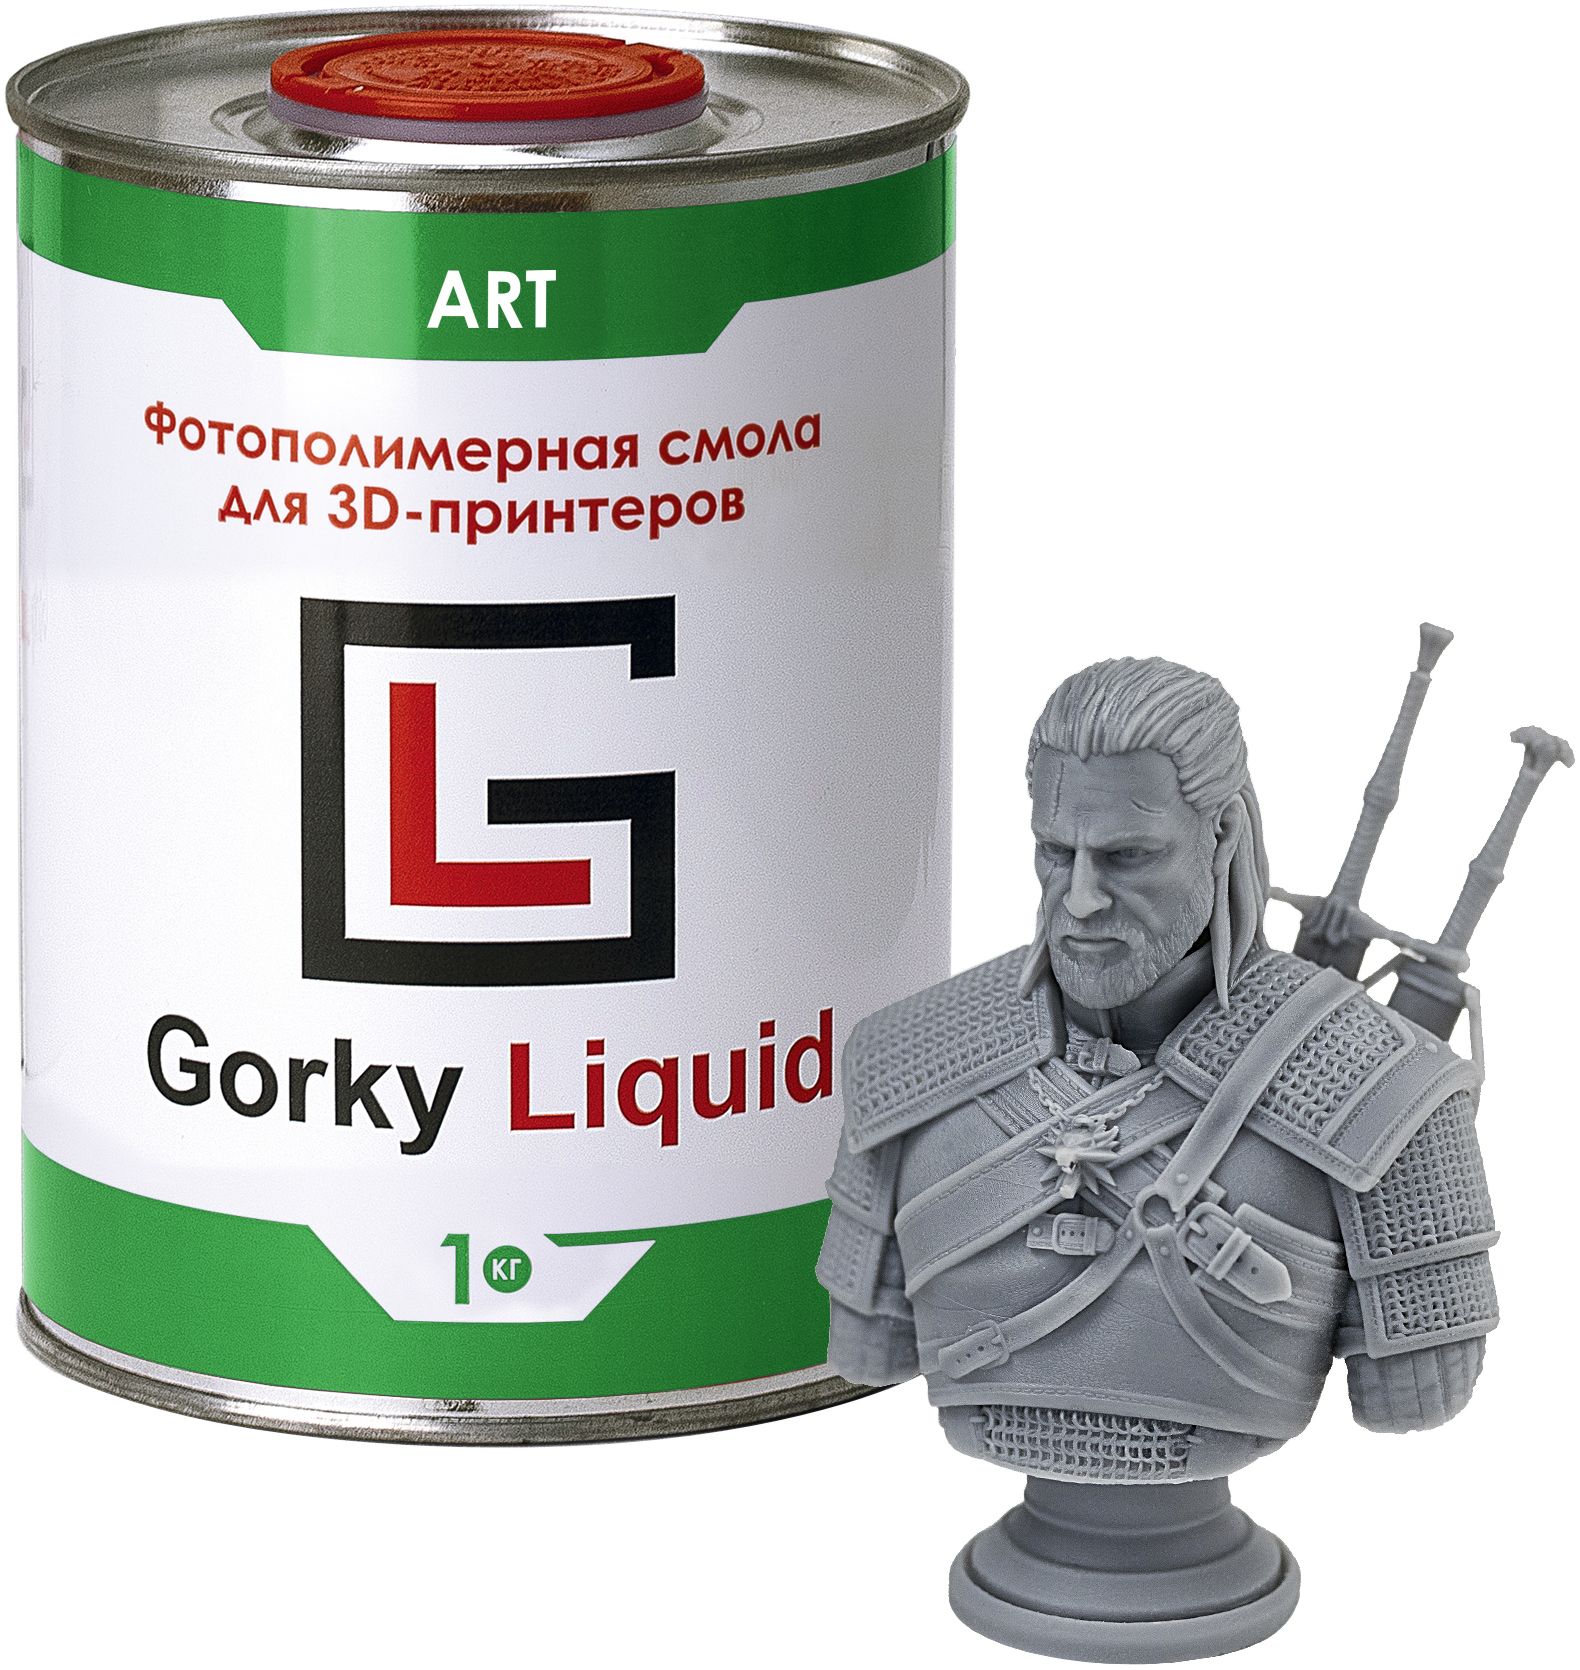 Фотополимерная смола Gorky Liquid ART серая 1 кг